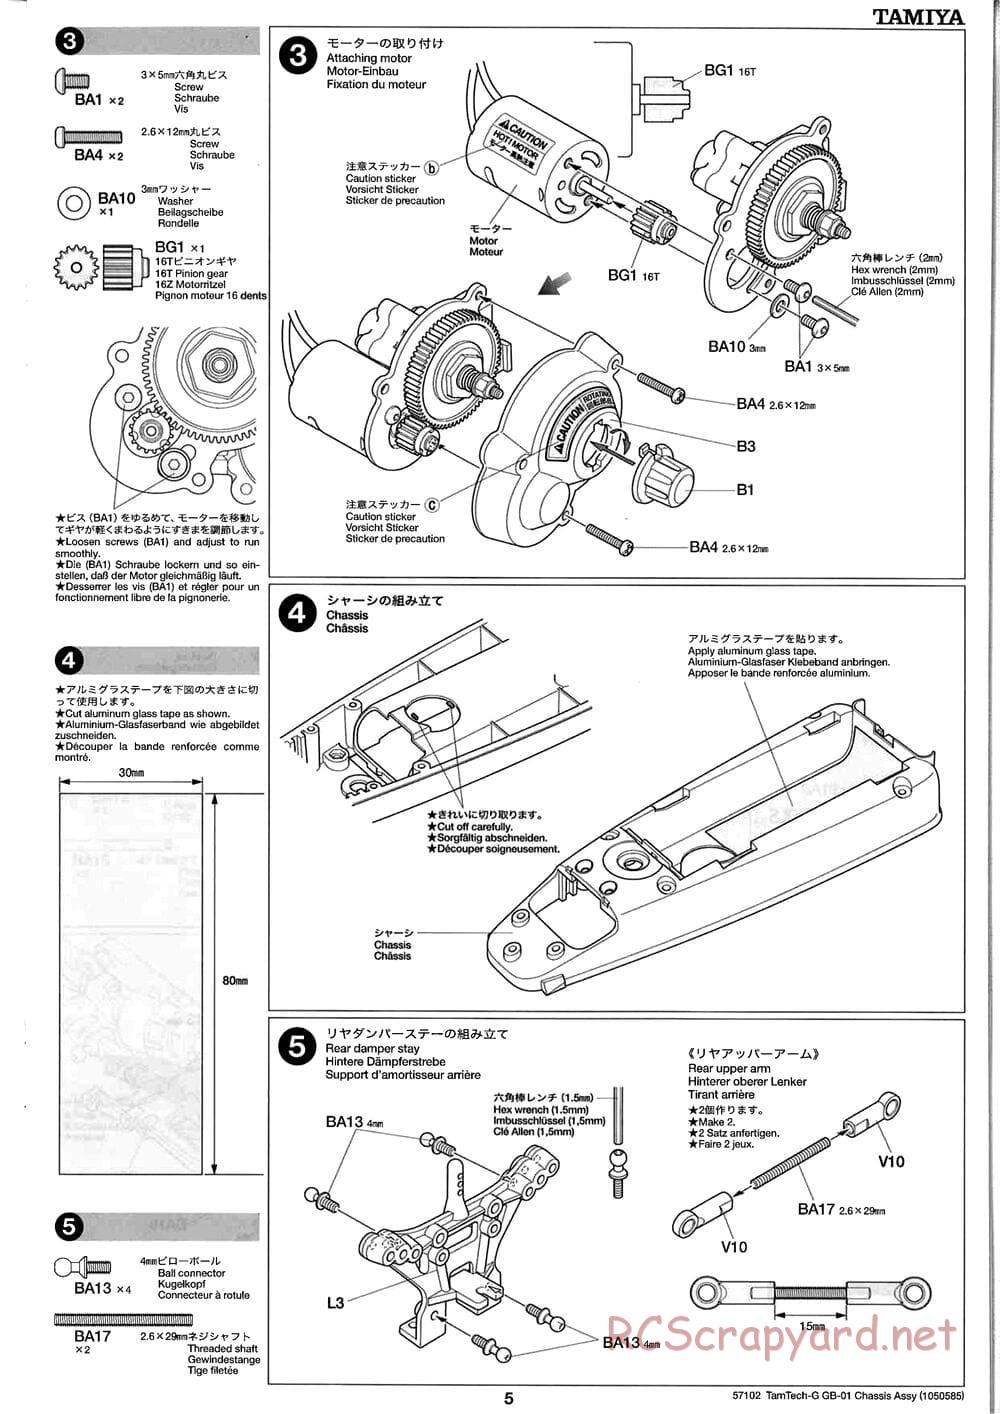 Tamiya - GB-01 Chassis - Manual - Page 5